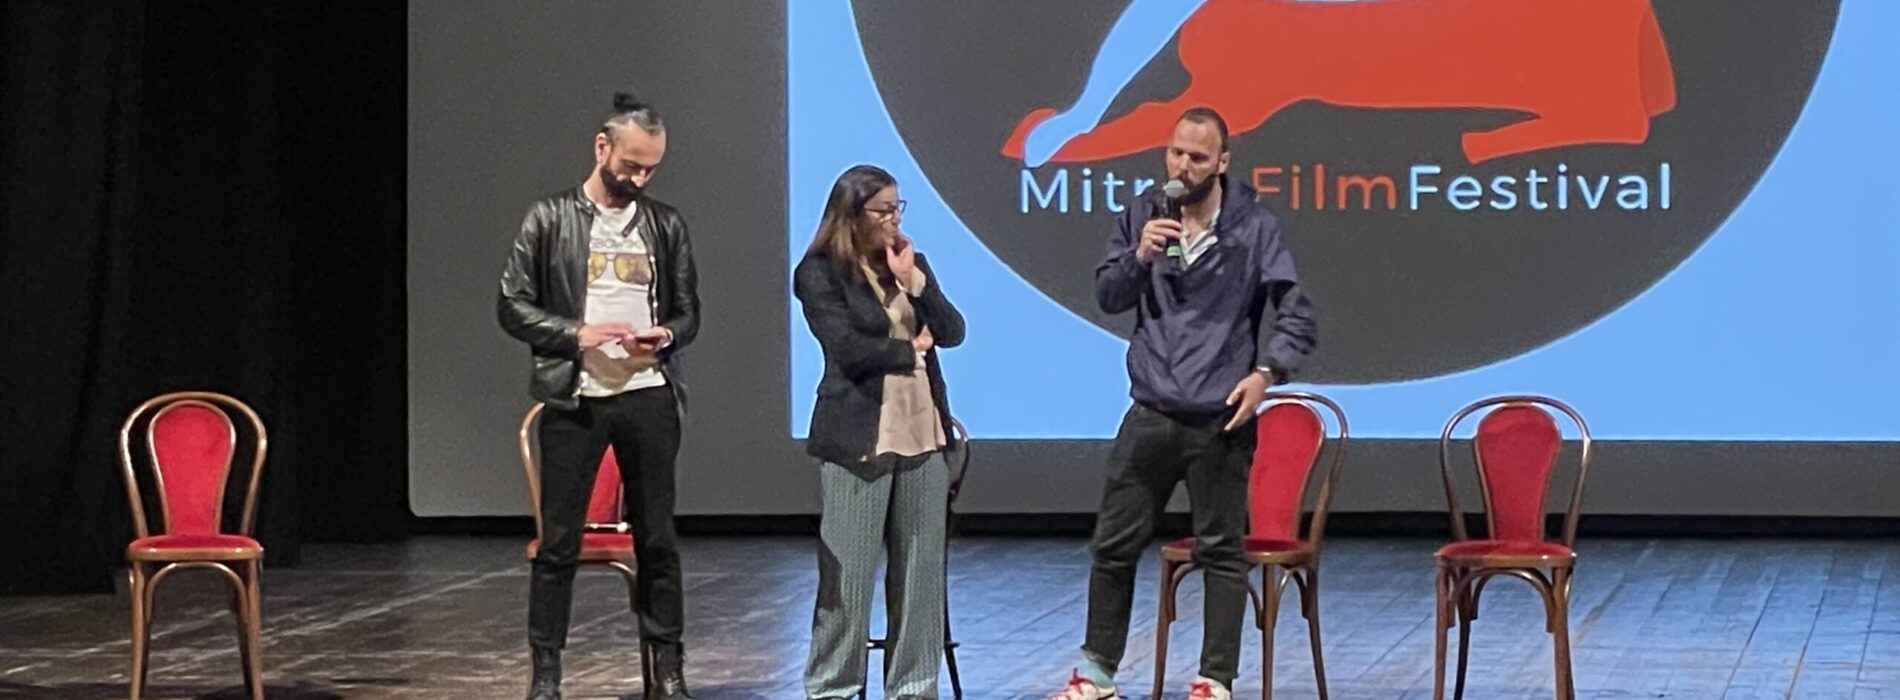 Mitreo Film Festival, calato il sipario sulla 23esima edizione